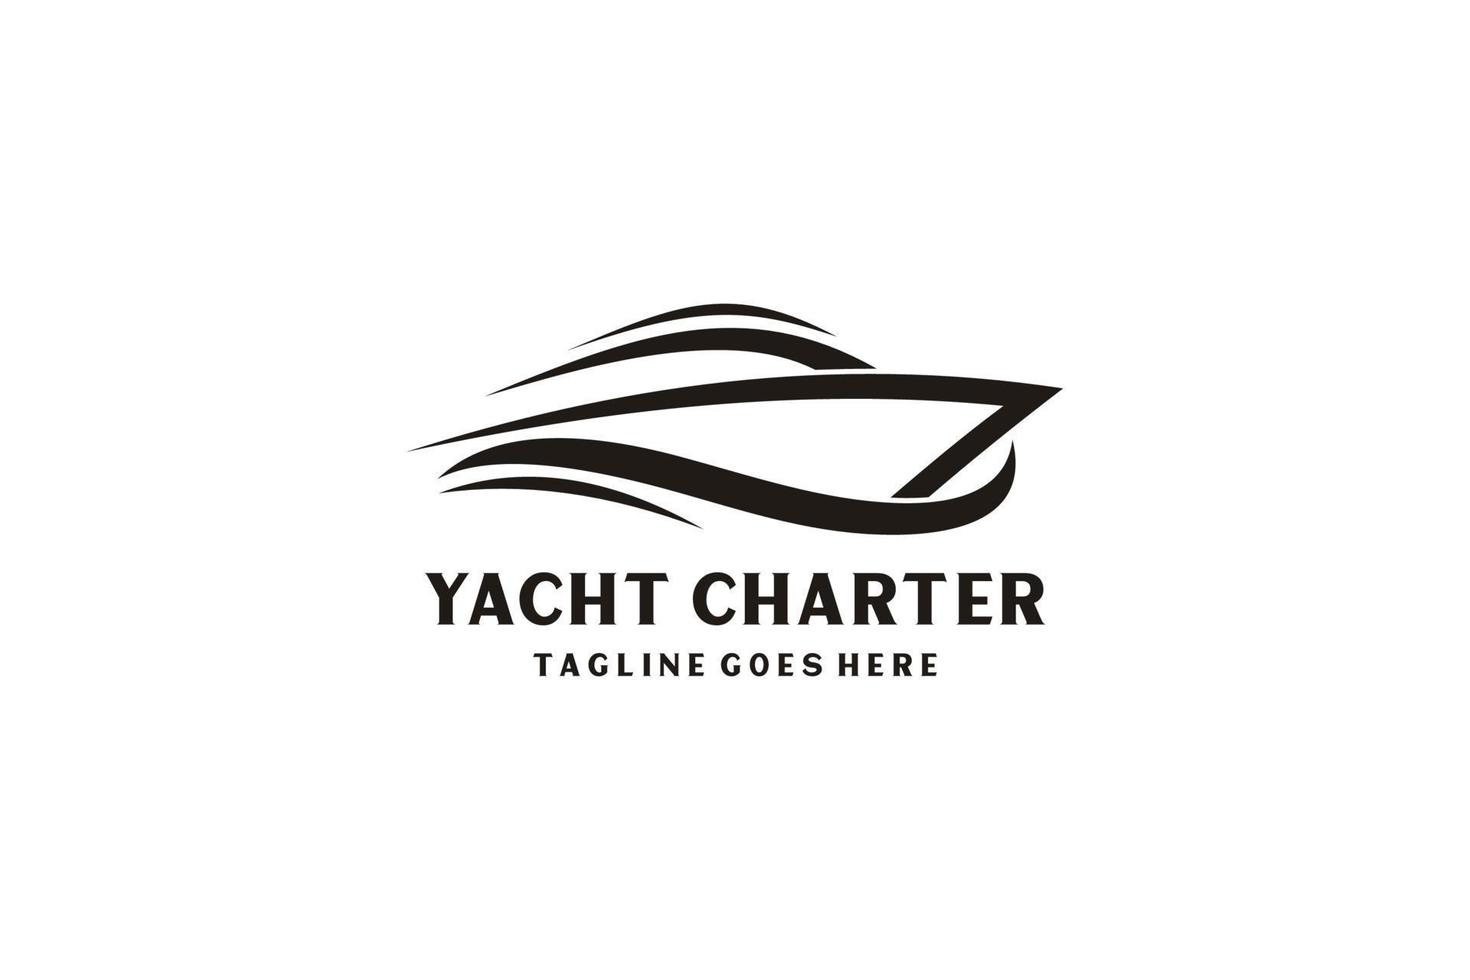 Inspiración en el diseño del logotipo del crucero en yate con un estilo de arte minimalista. vector